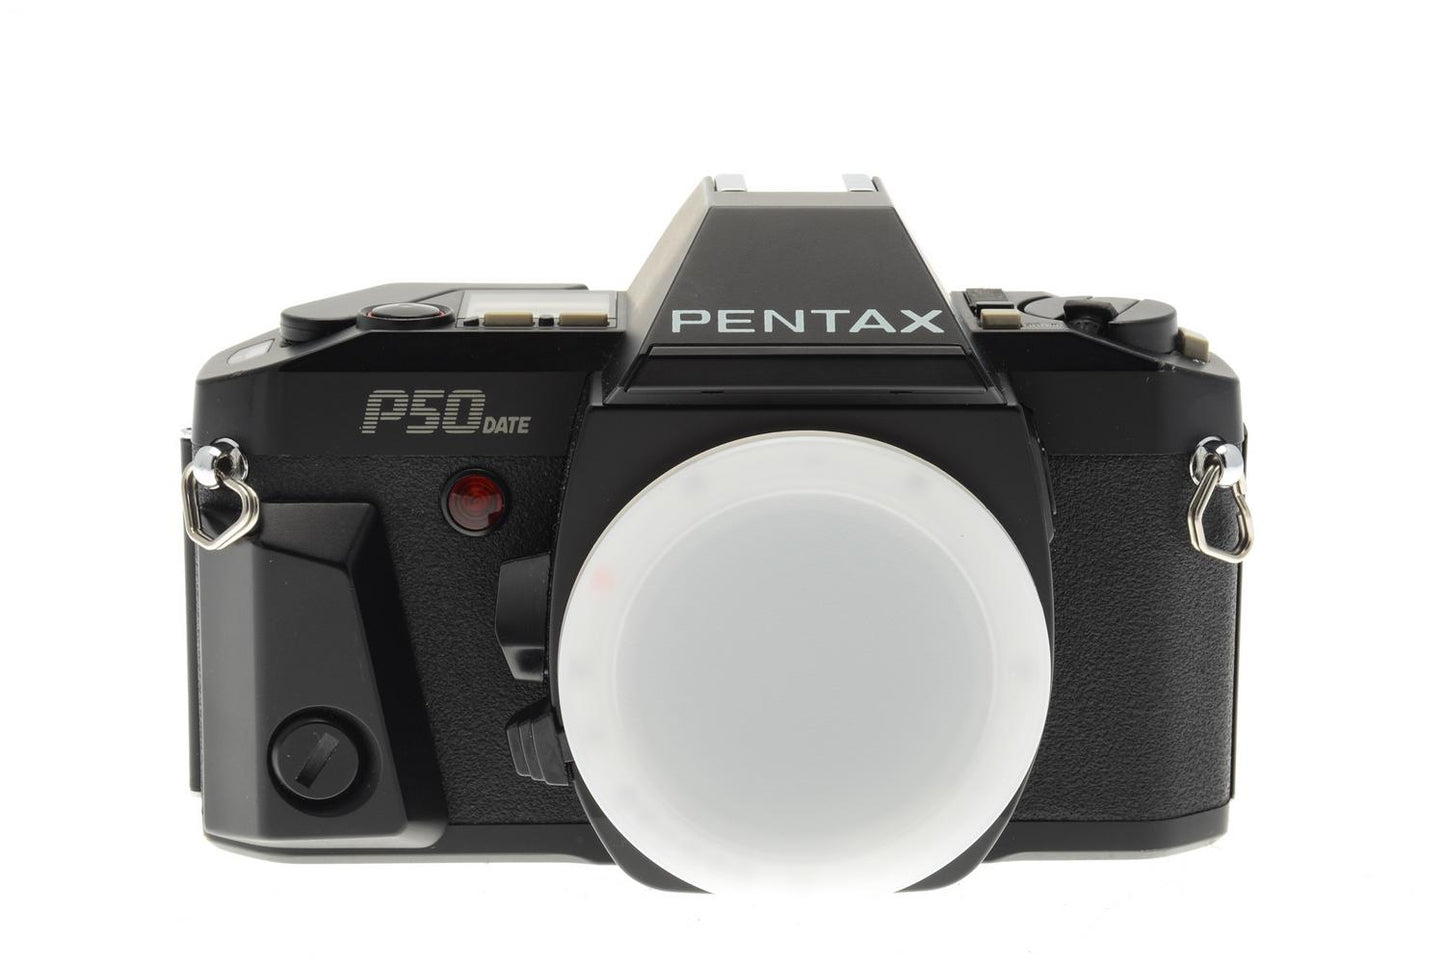 Pentax P50 Date - Camera